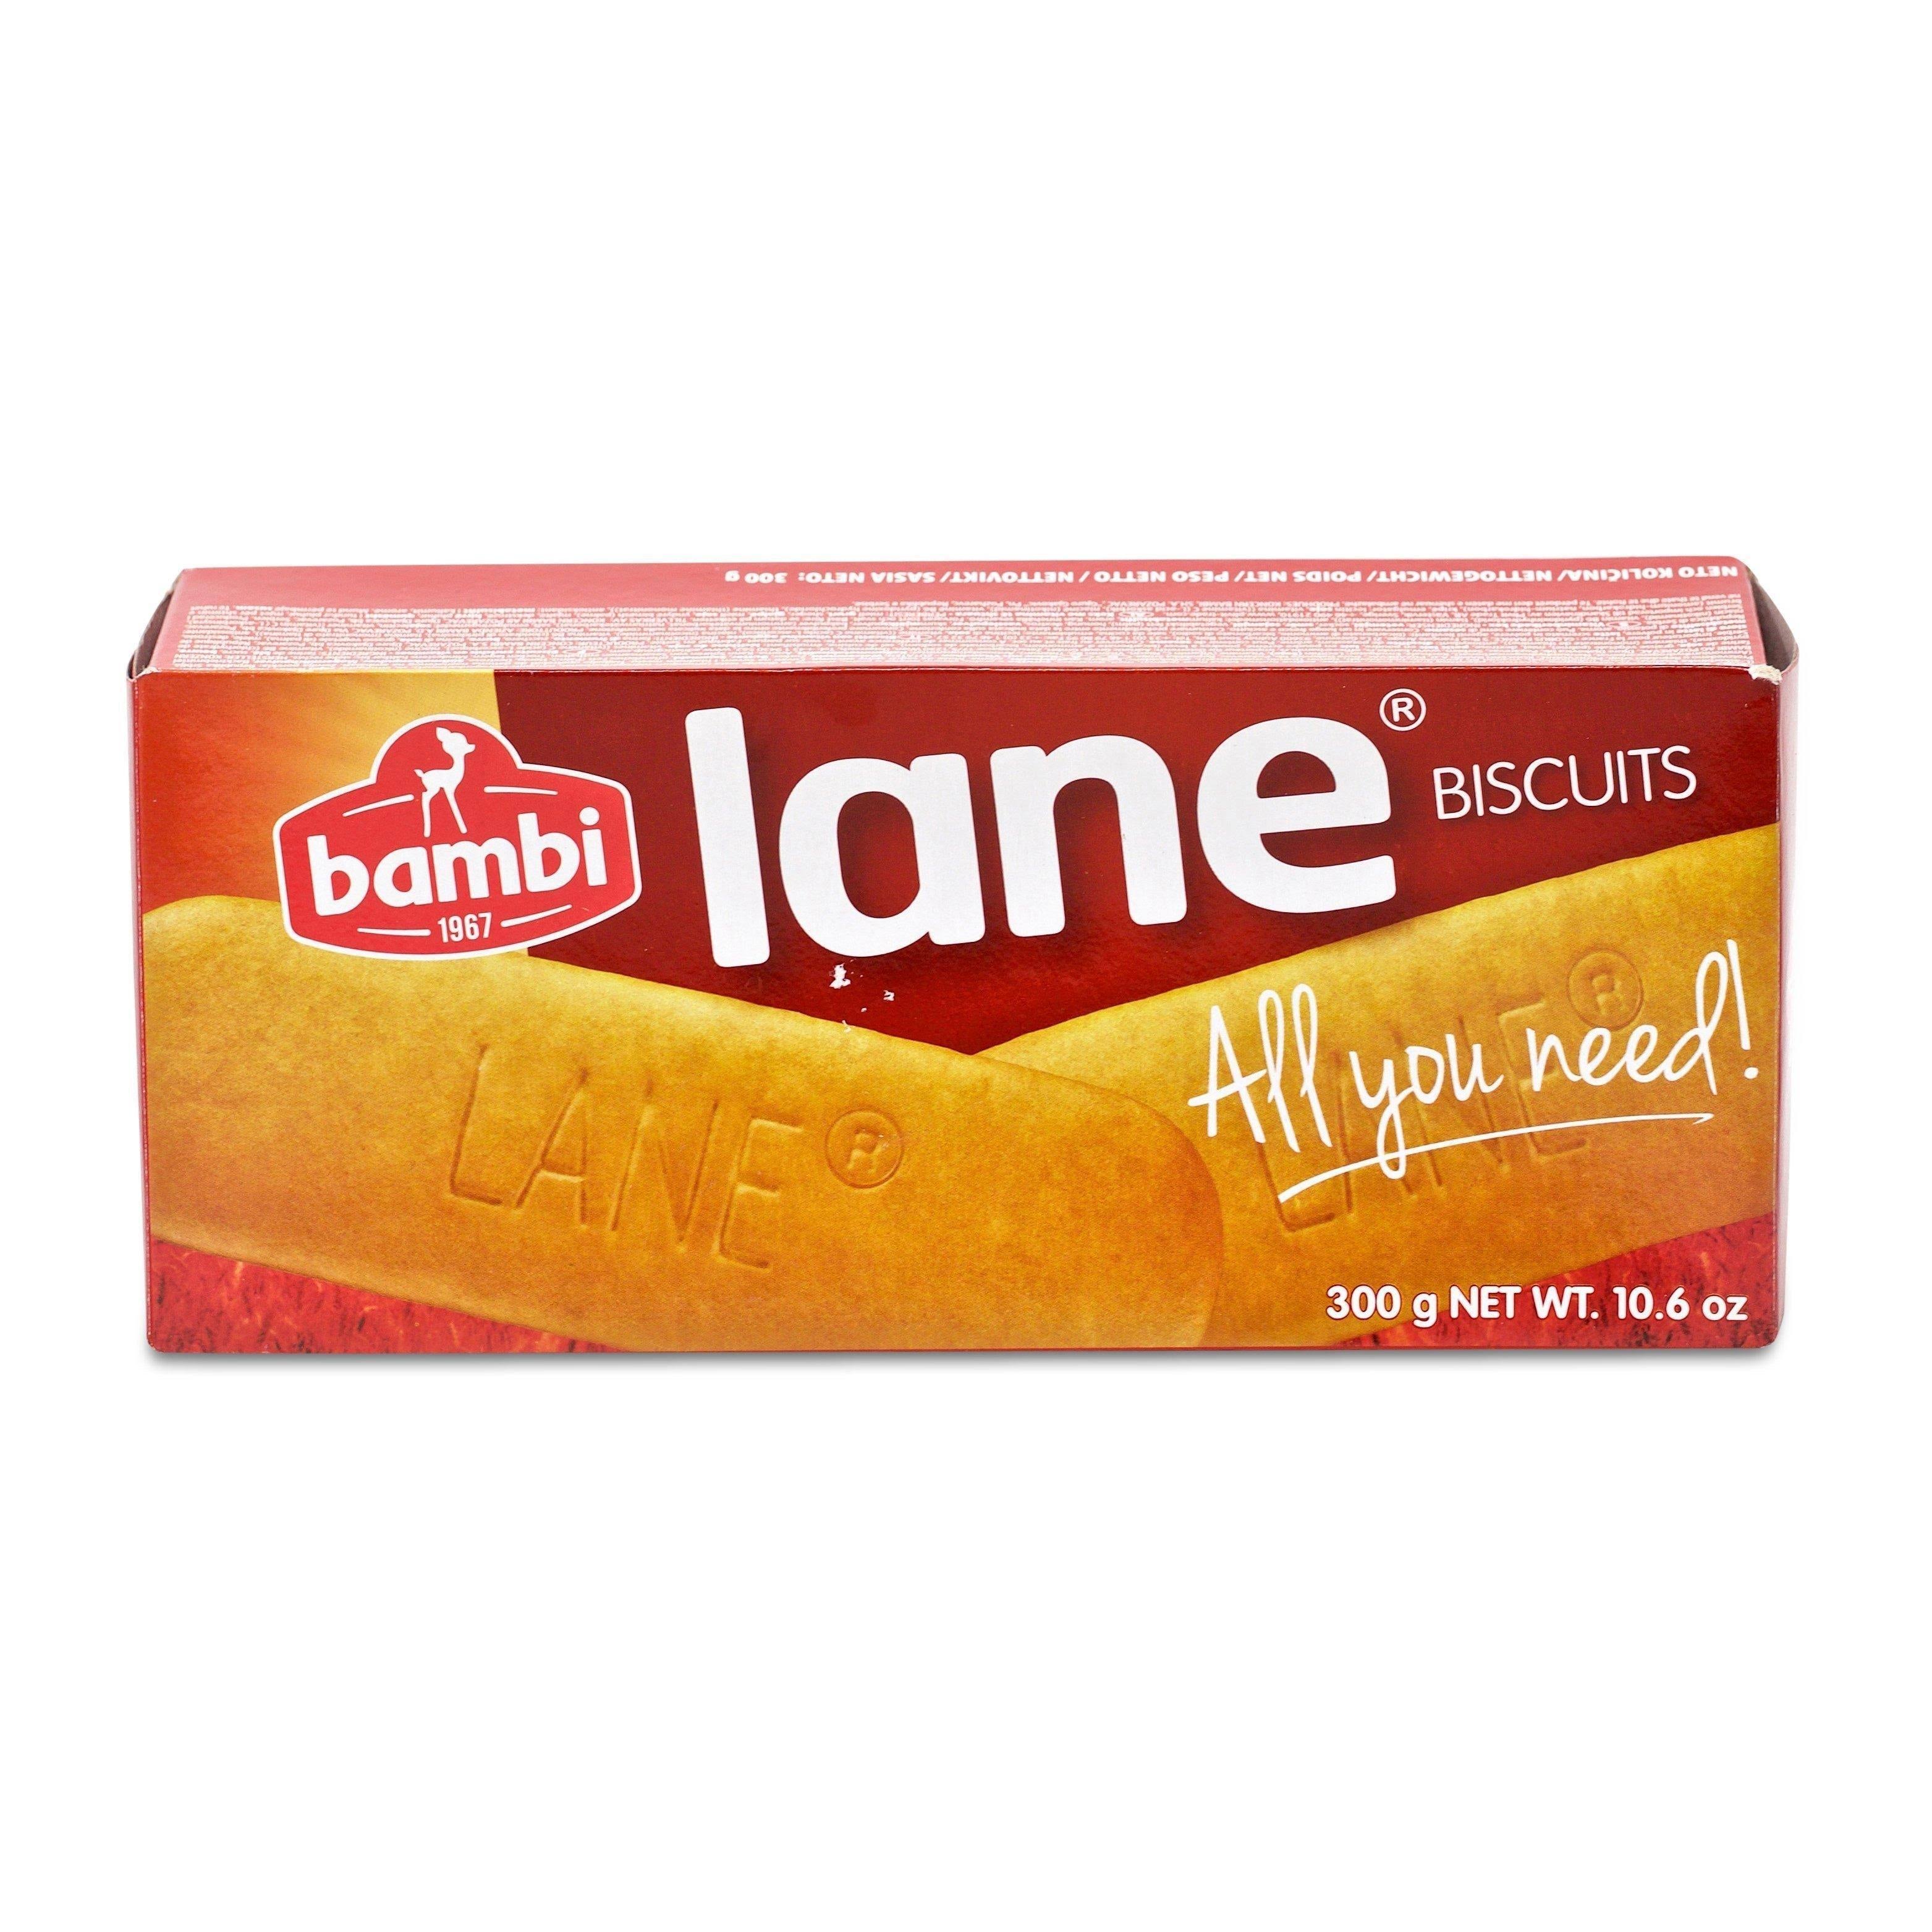 Bambi Lane Biscuits - 300g